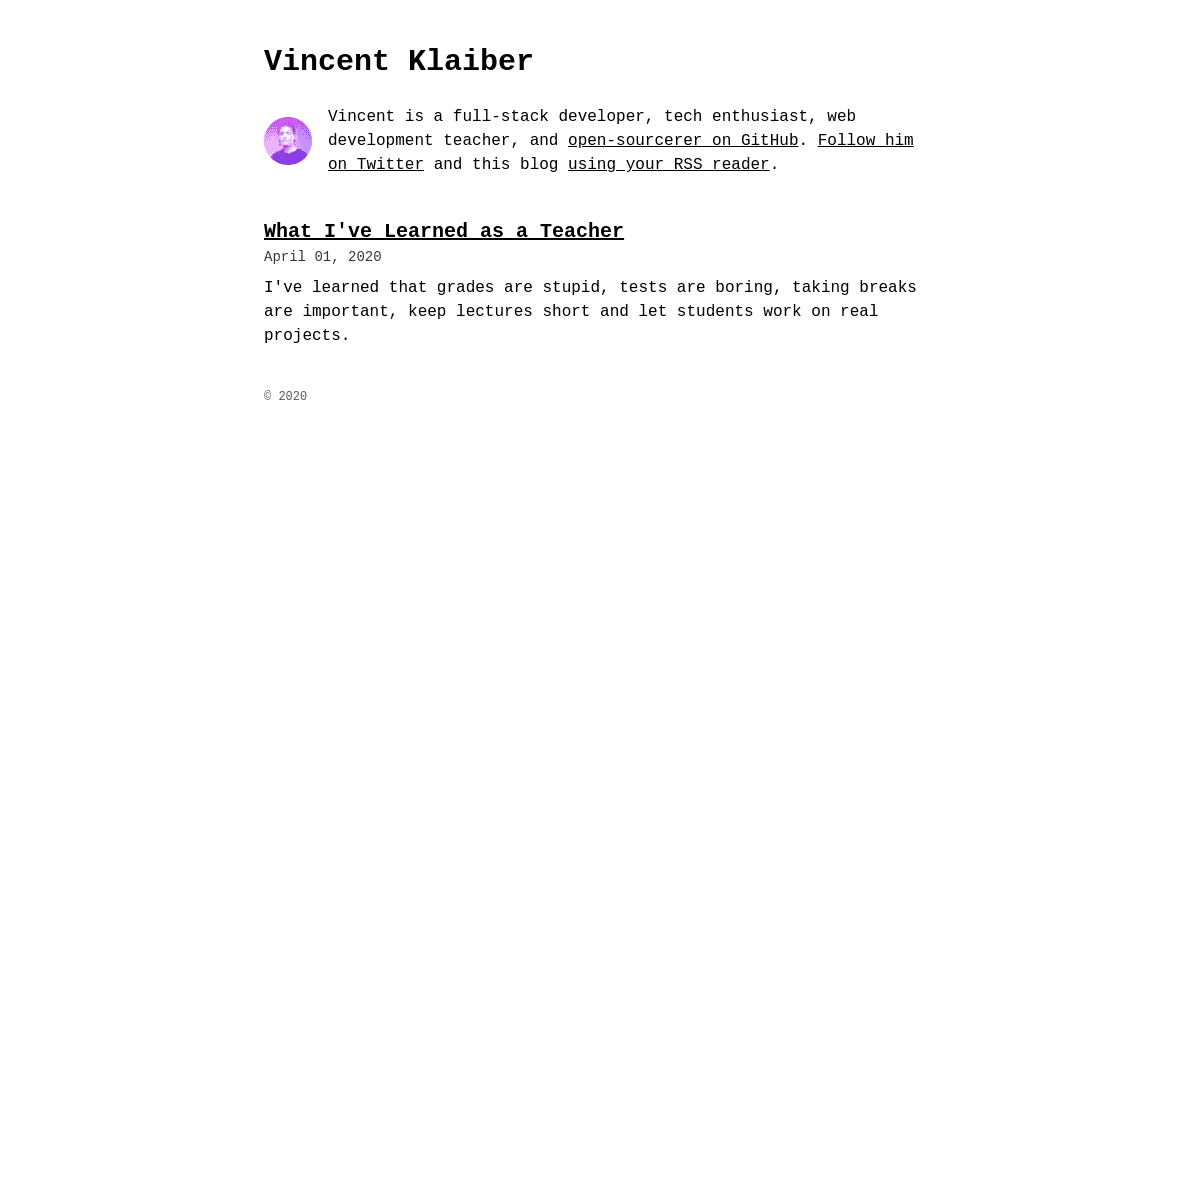 A complete backup of vinkla.com